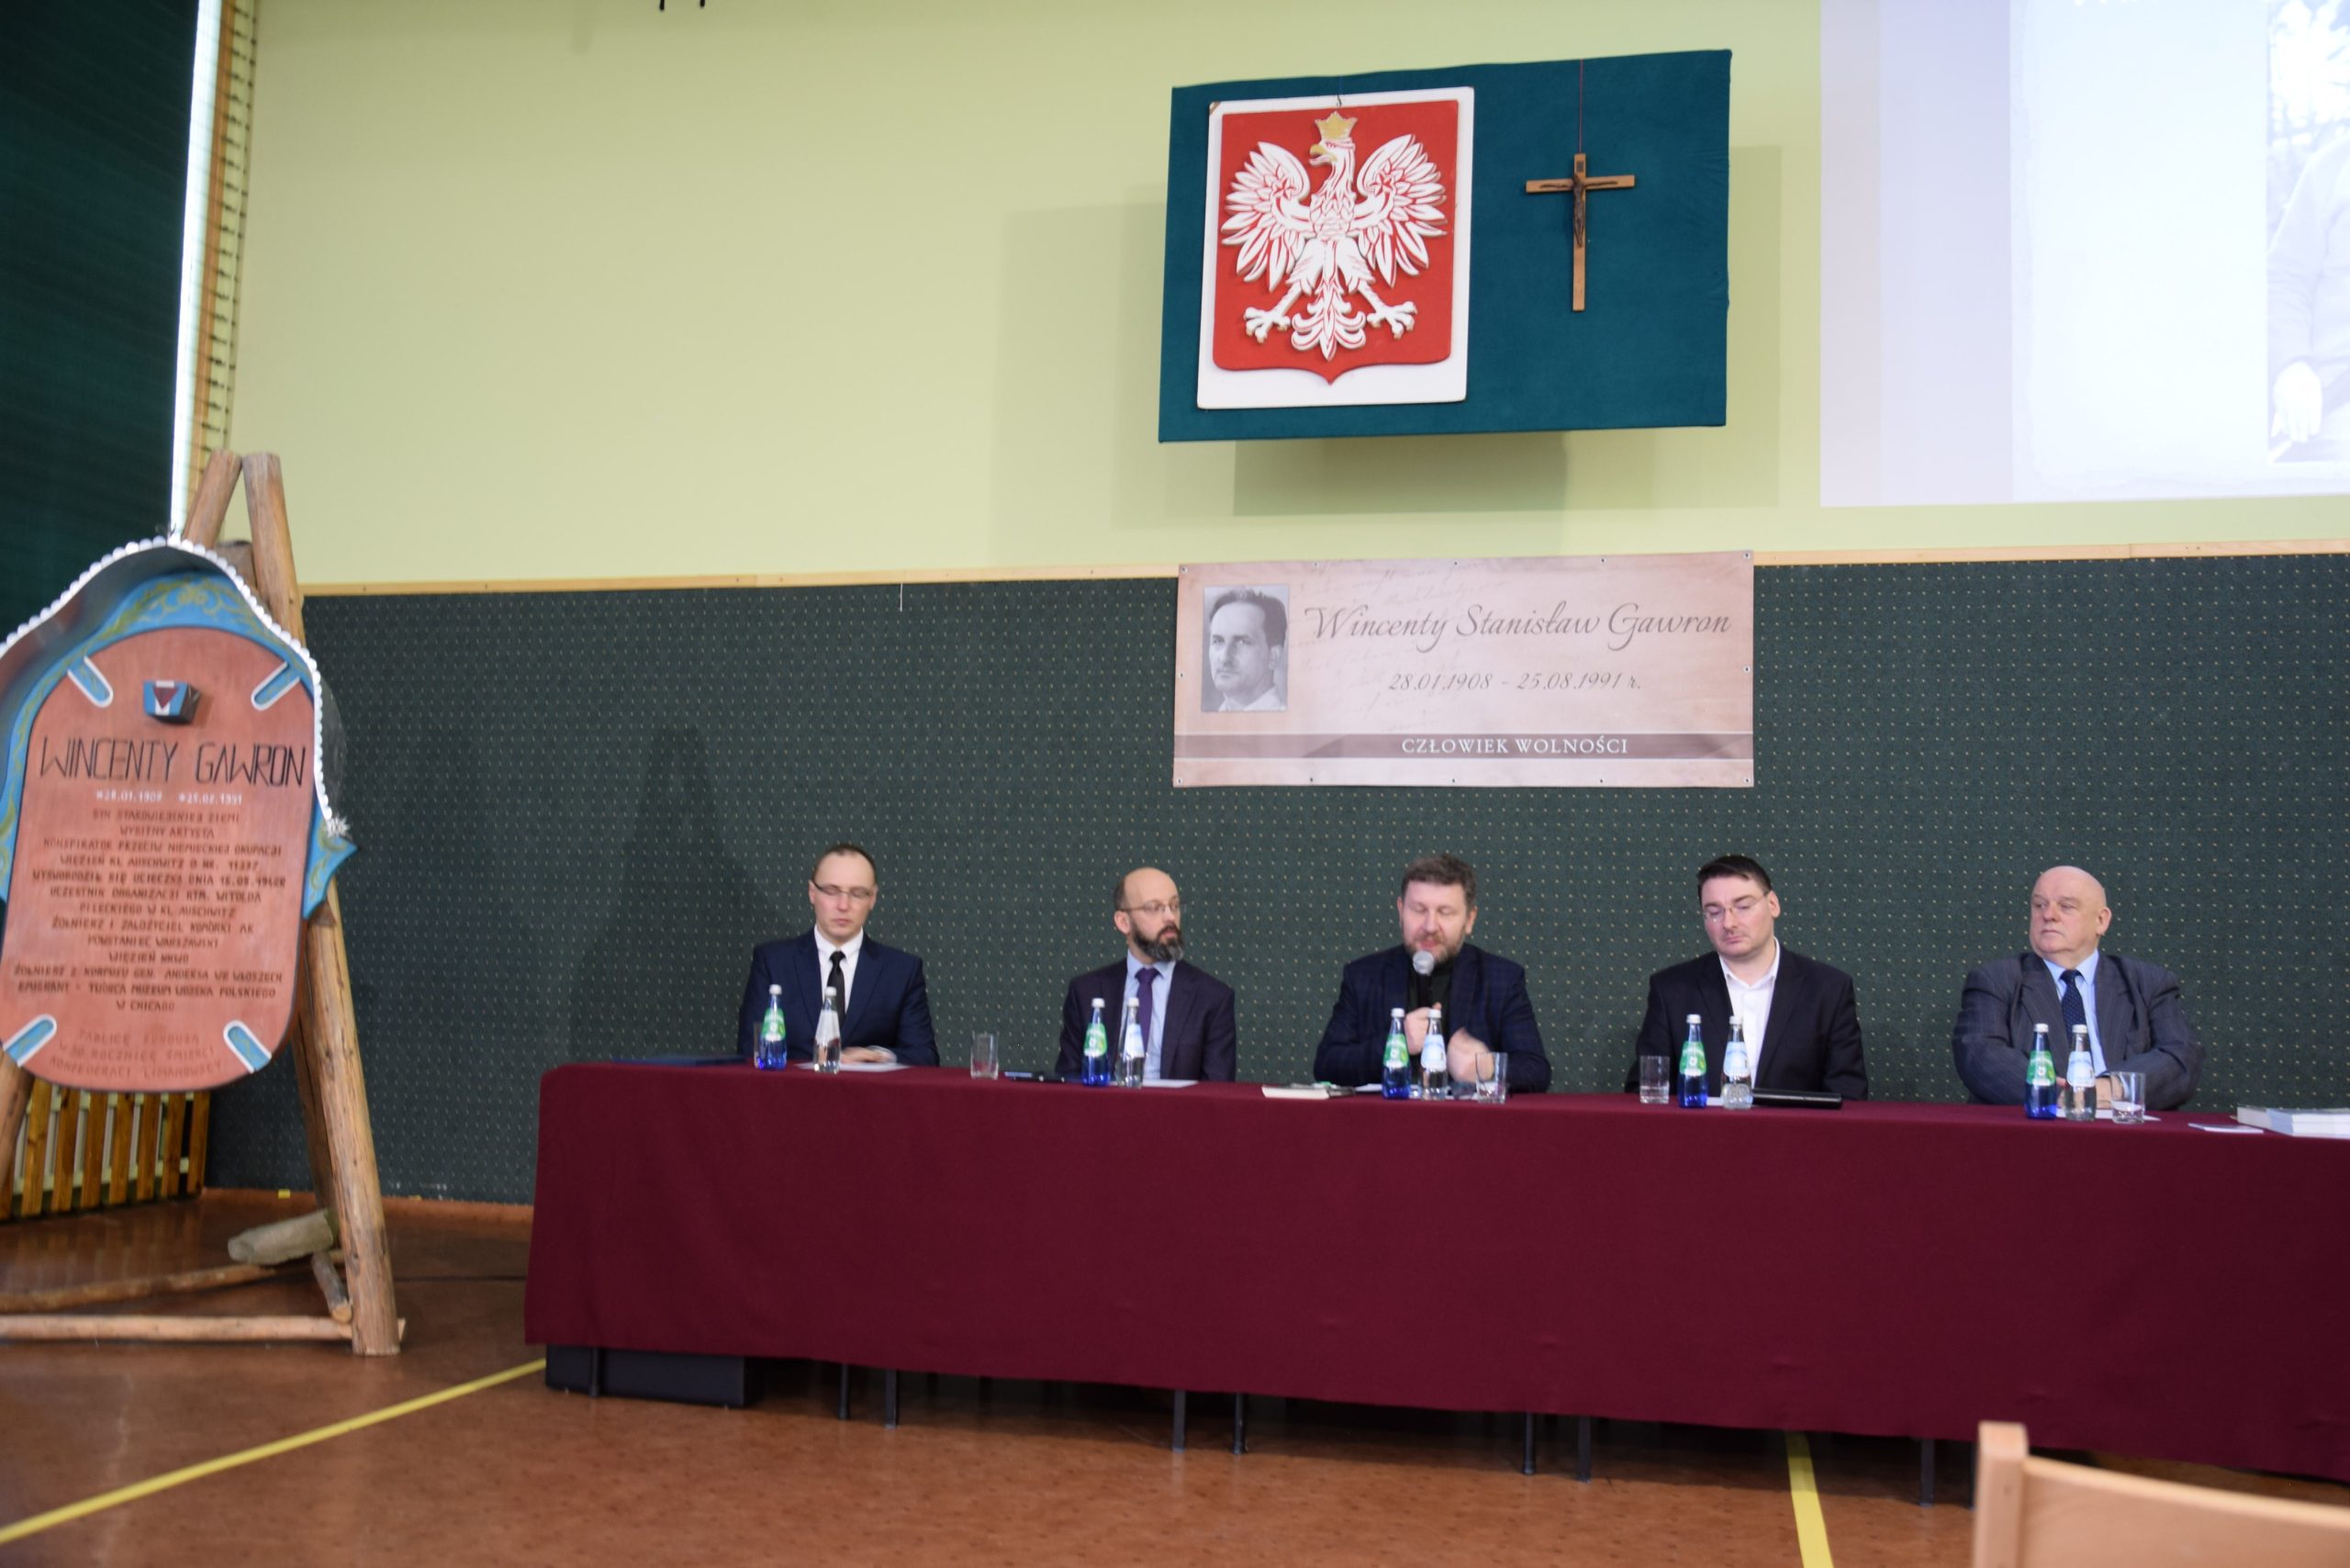 konferencja naukowa - Wincenty Stanisław Gawron – człowiek wolności